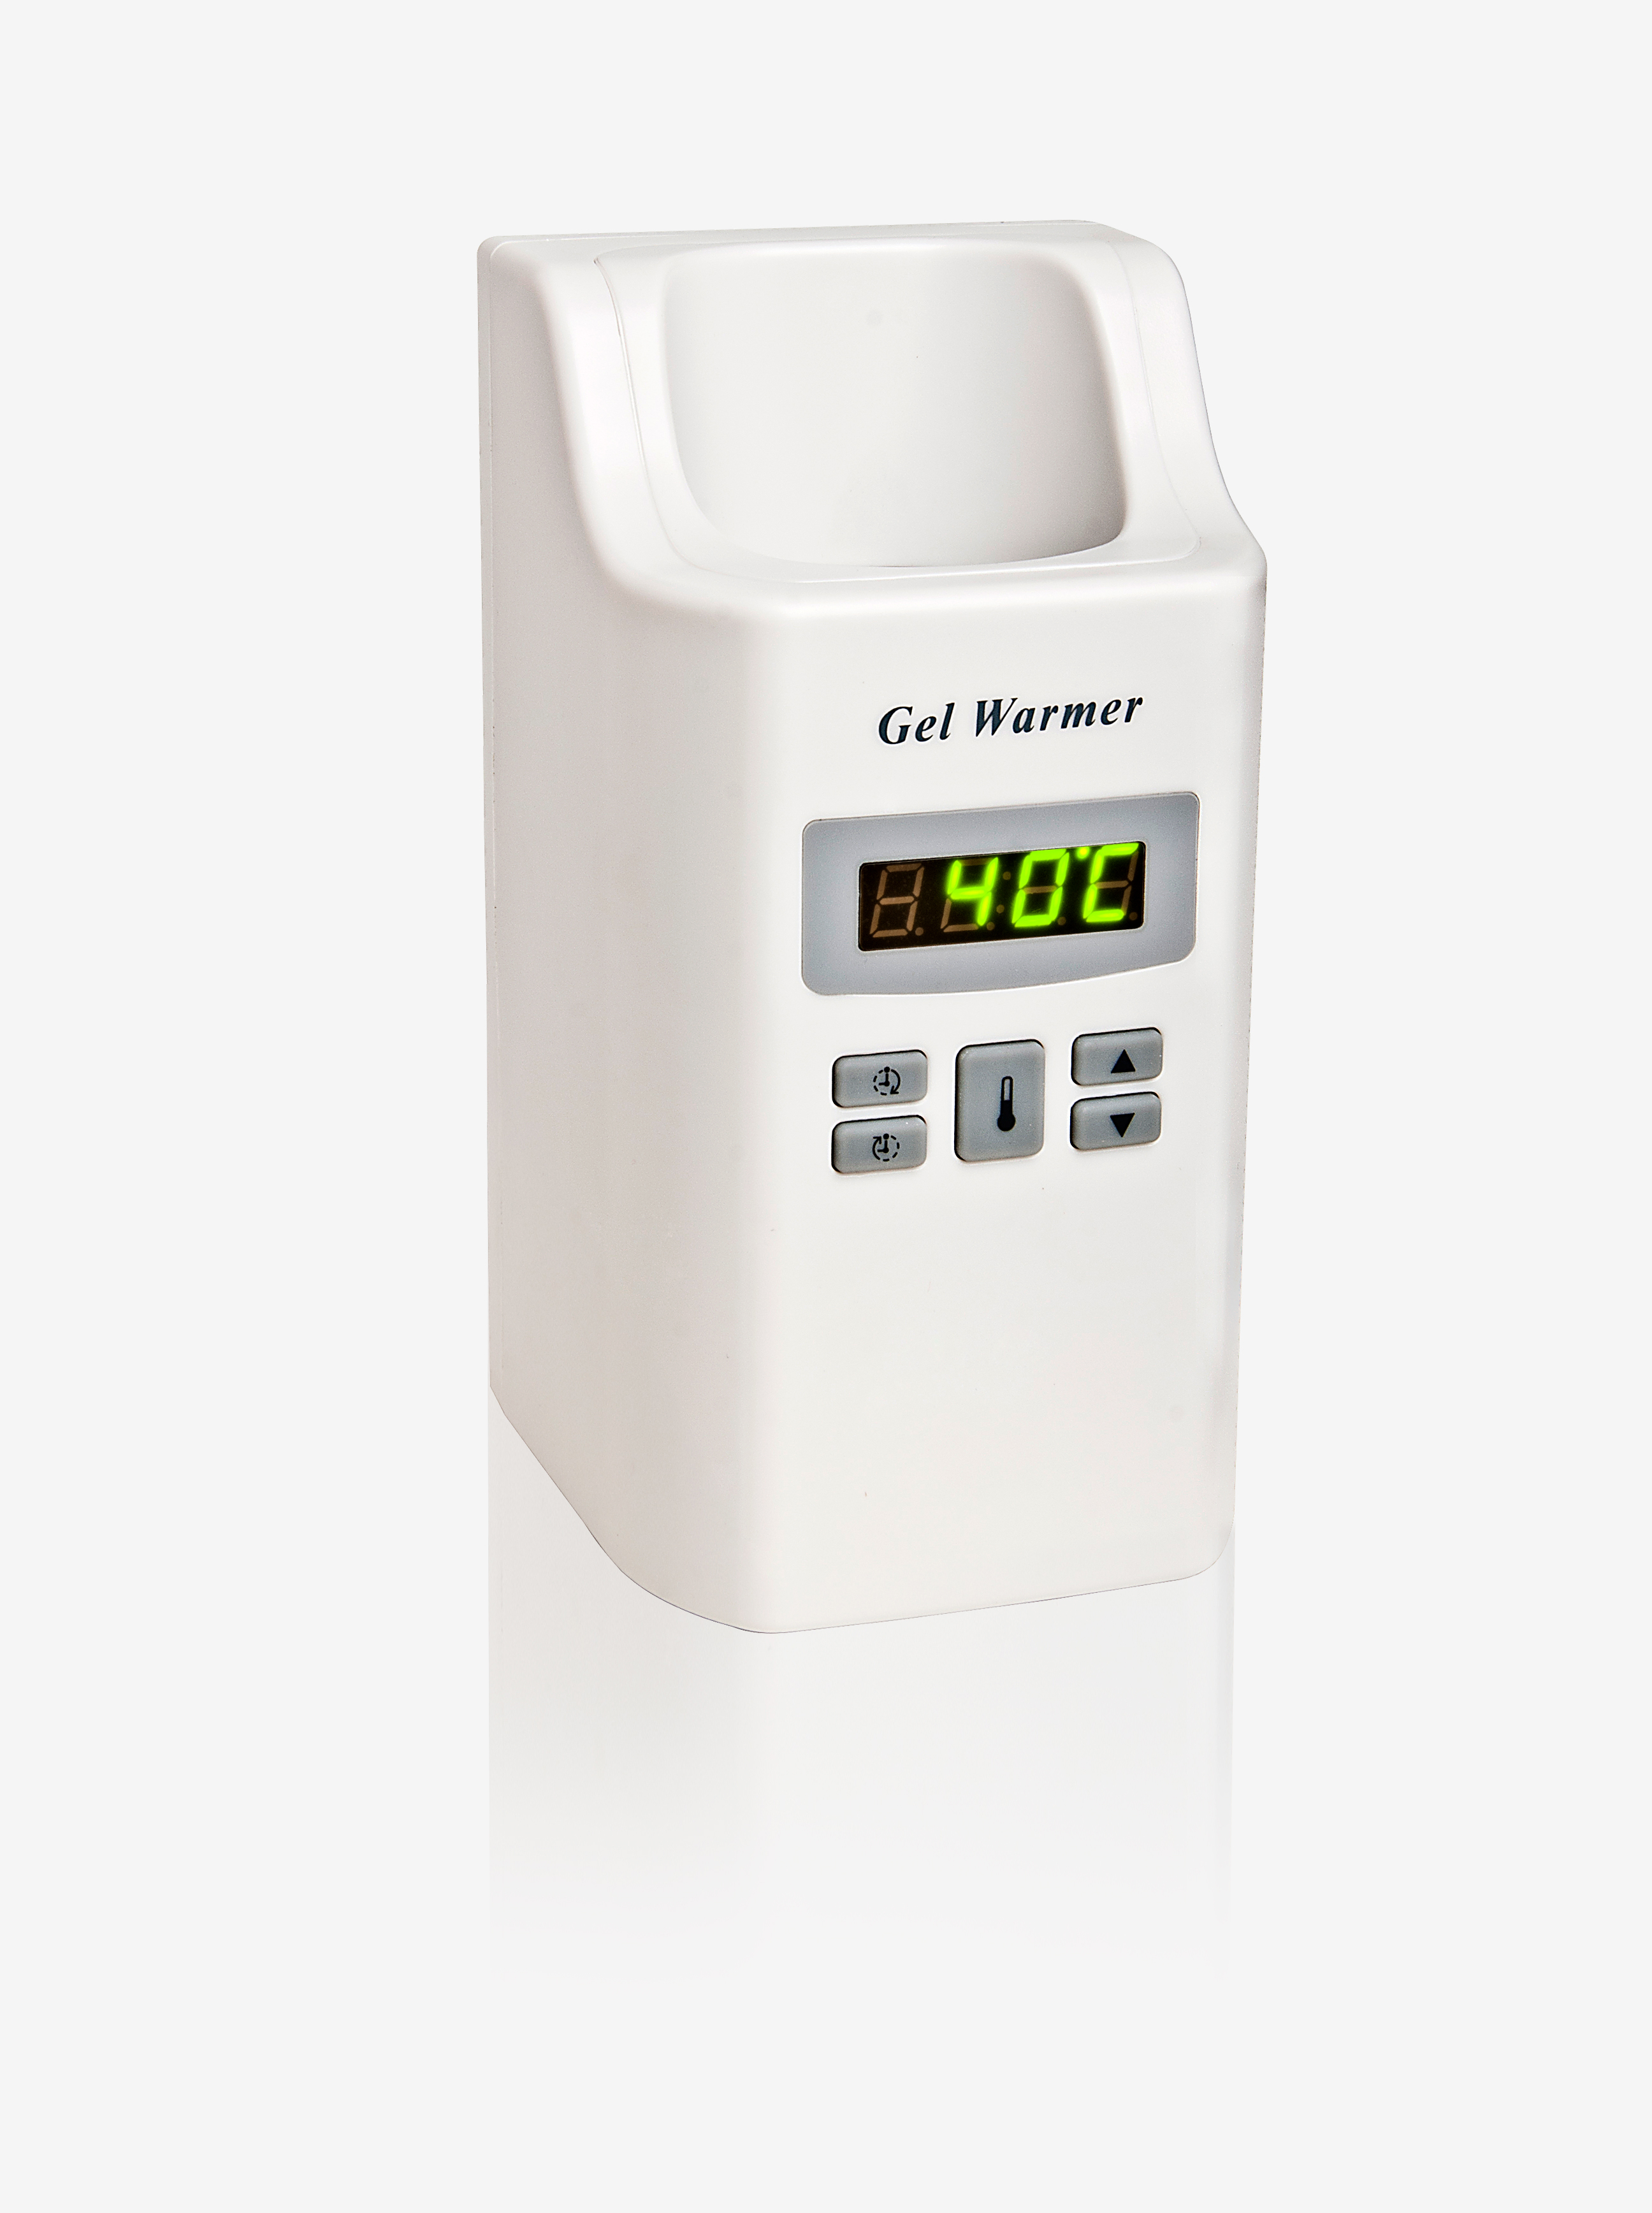 G6MW-01 Gel Warmer